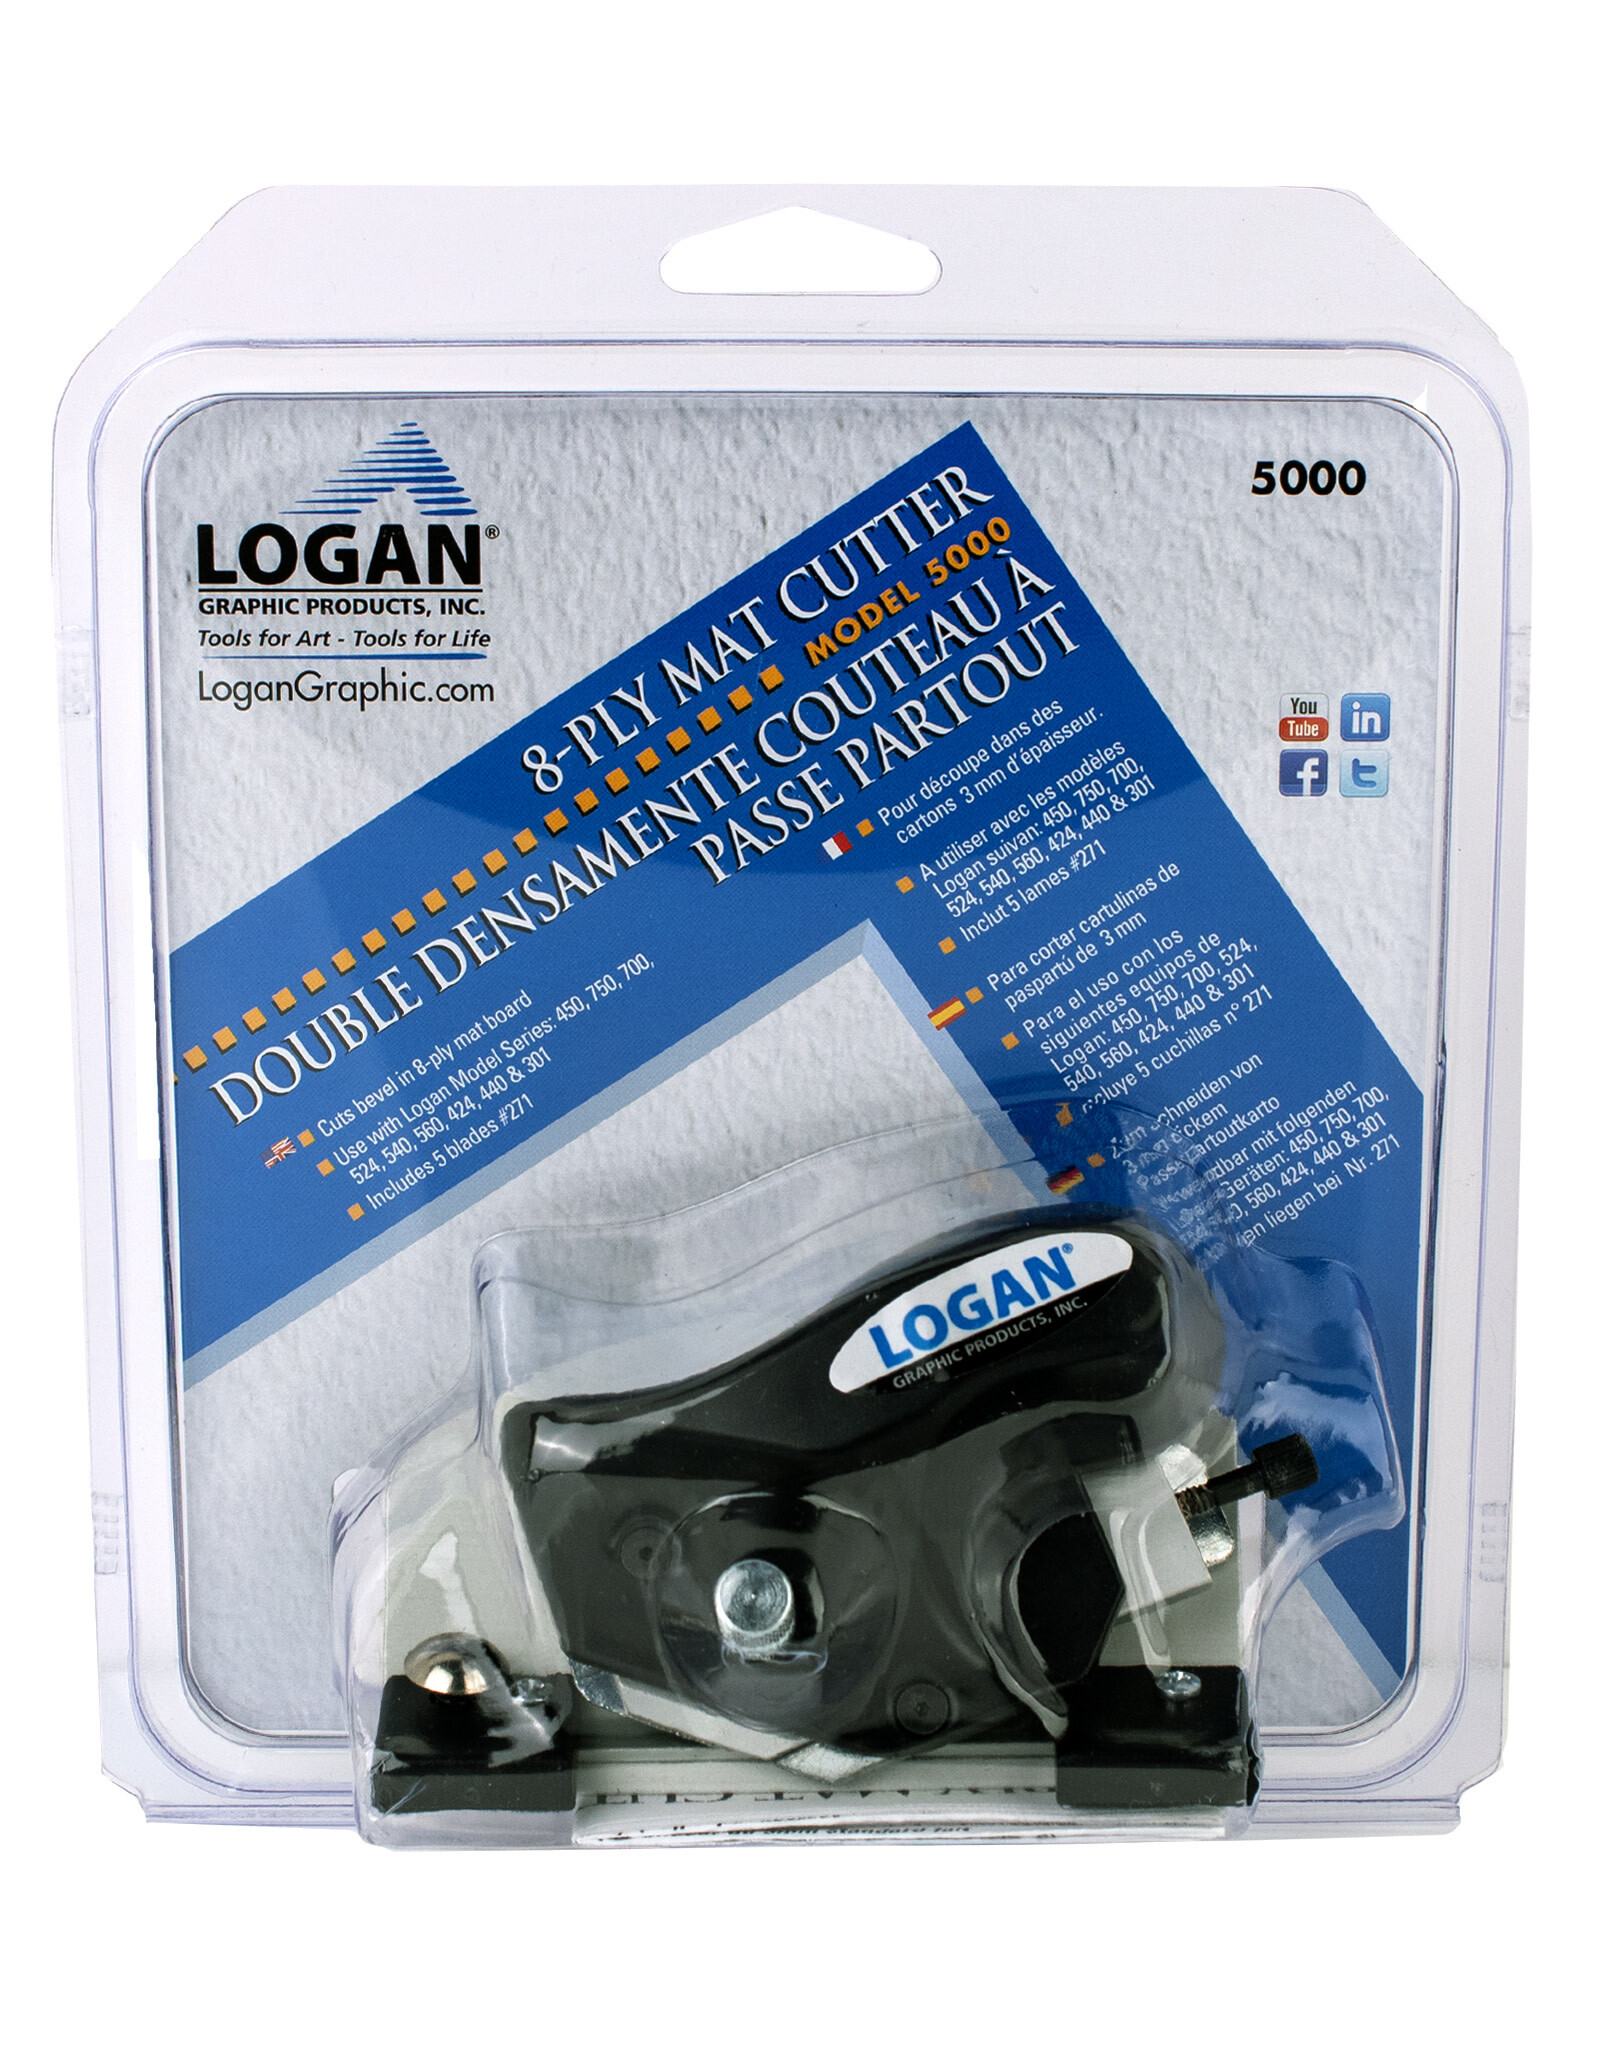 CLEARANCE Logan 8-ply Bevel Mat Cutter 5000 (Open Package)